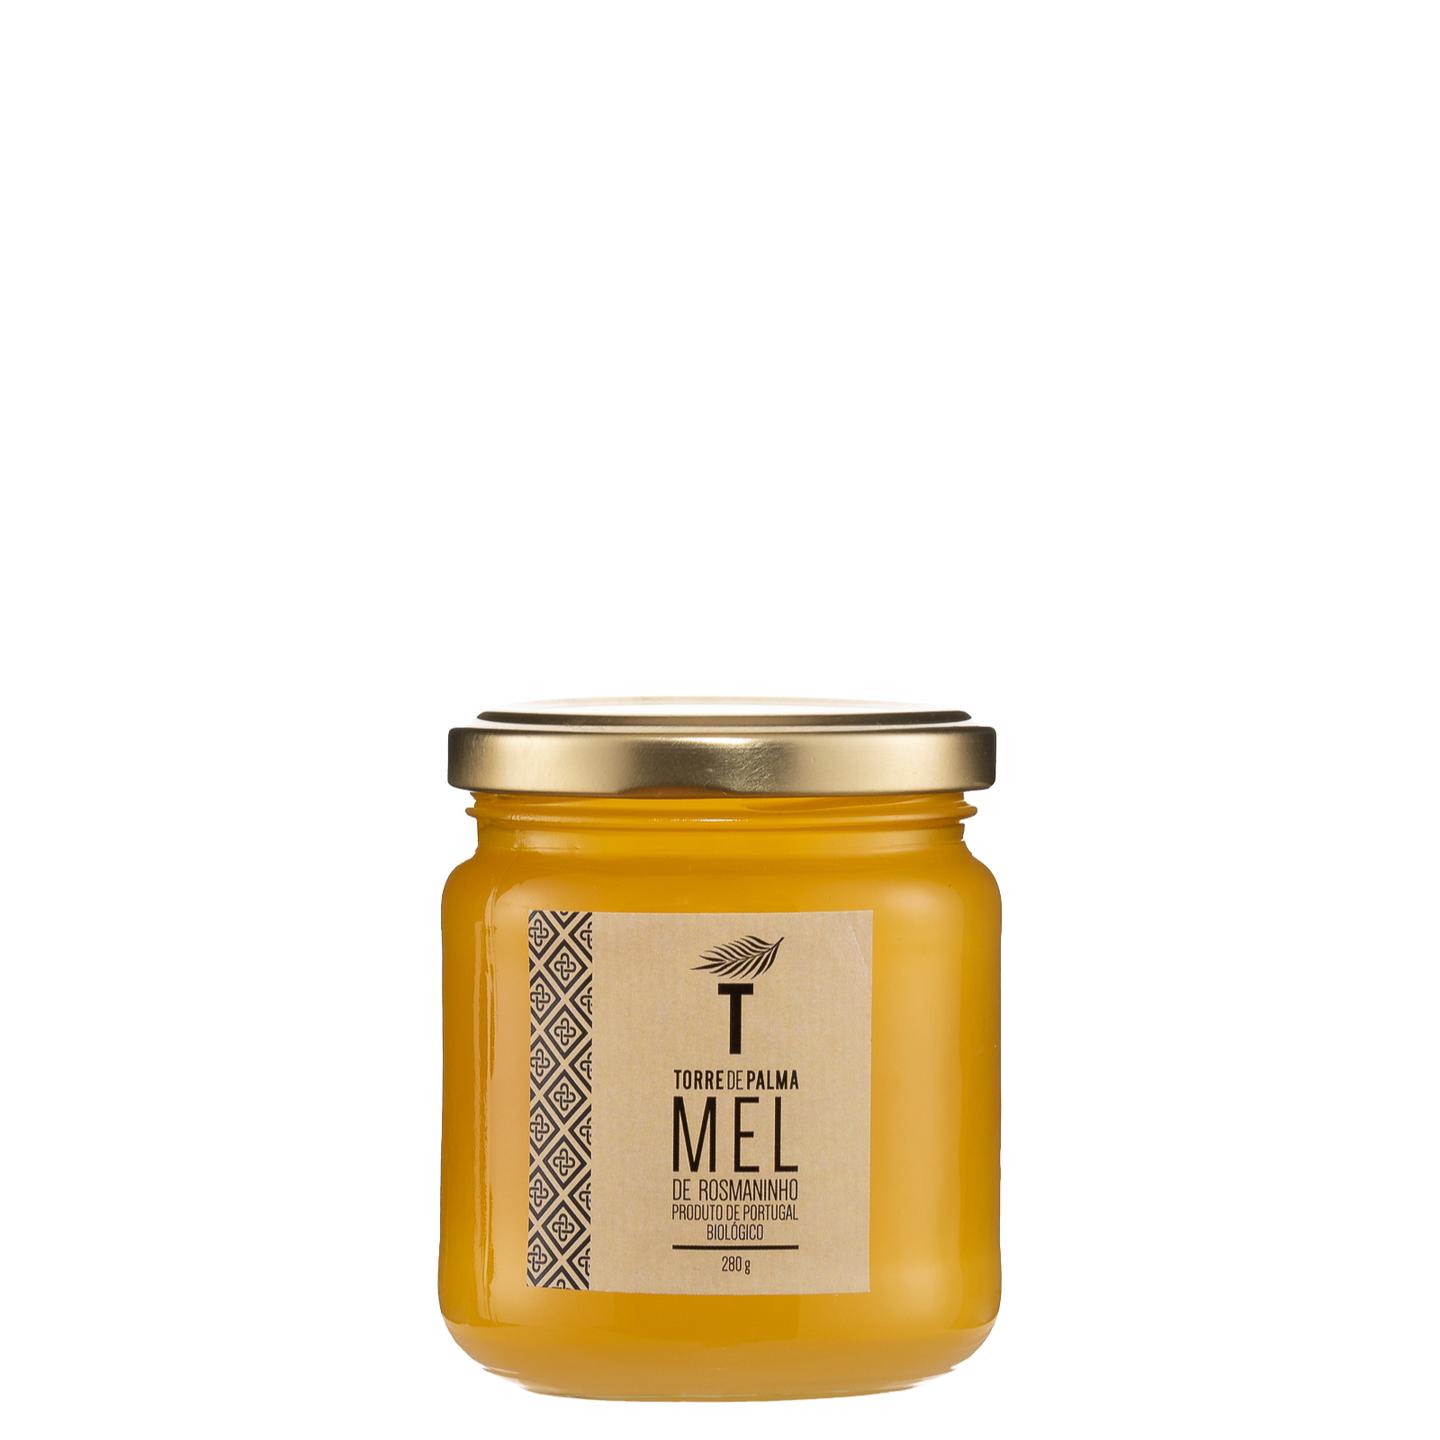 Multifloral honey